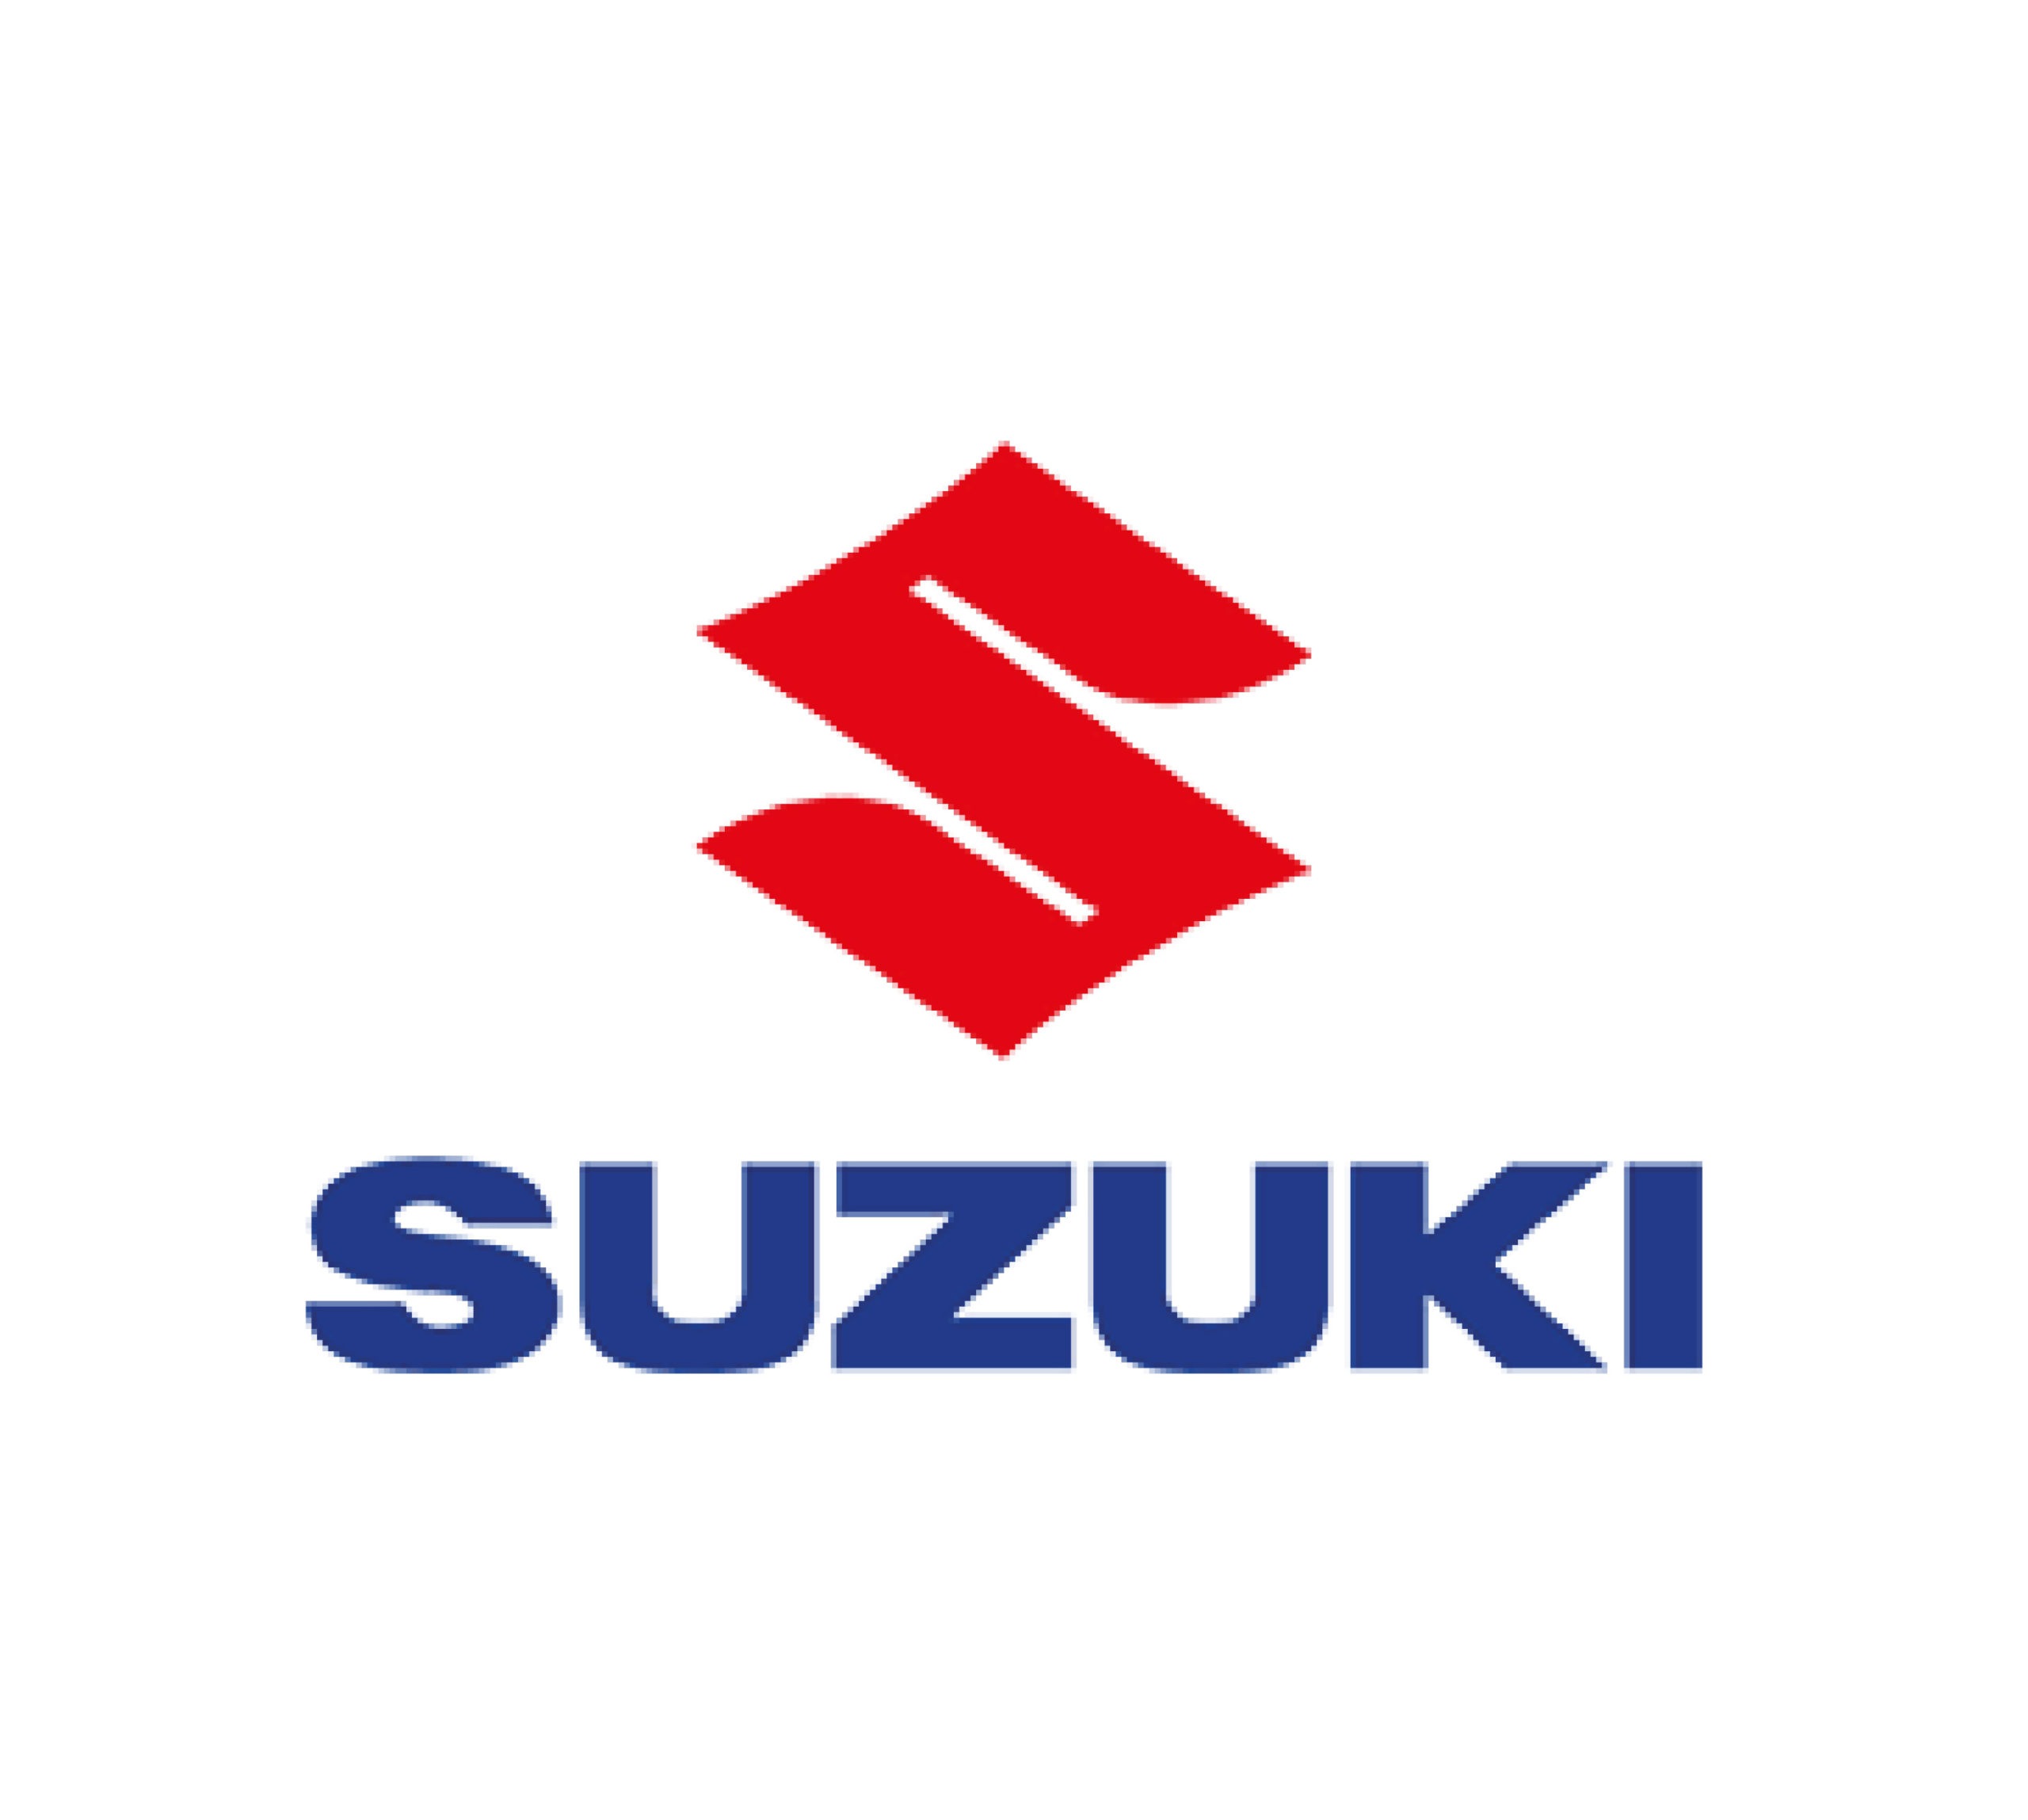 suzuki scaled